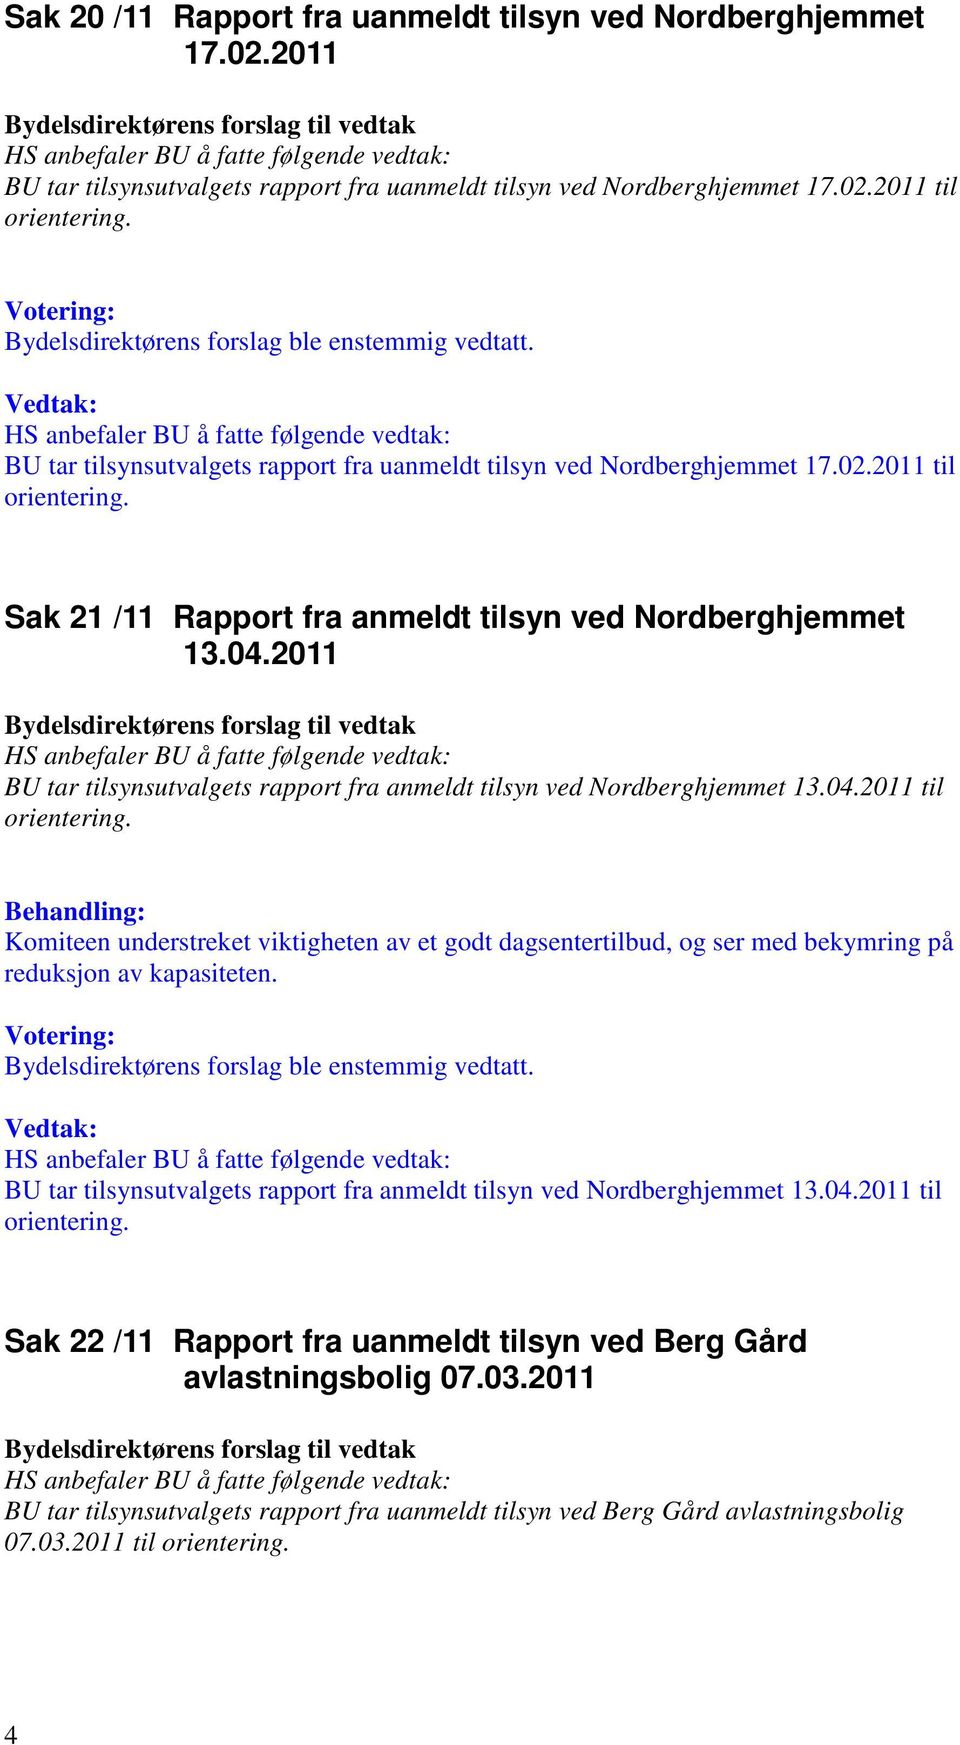 2011 BU tar tilsynsutvalgets rapport fra anmeldt tilsyn ved Nordberghjemmet 13.04.